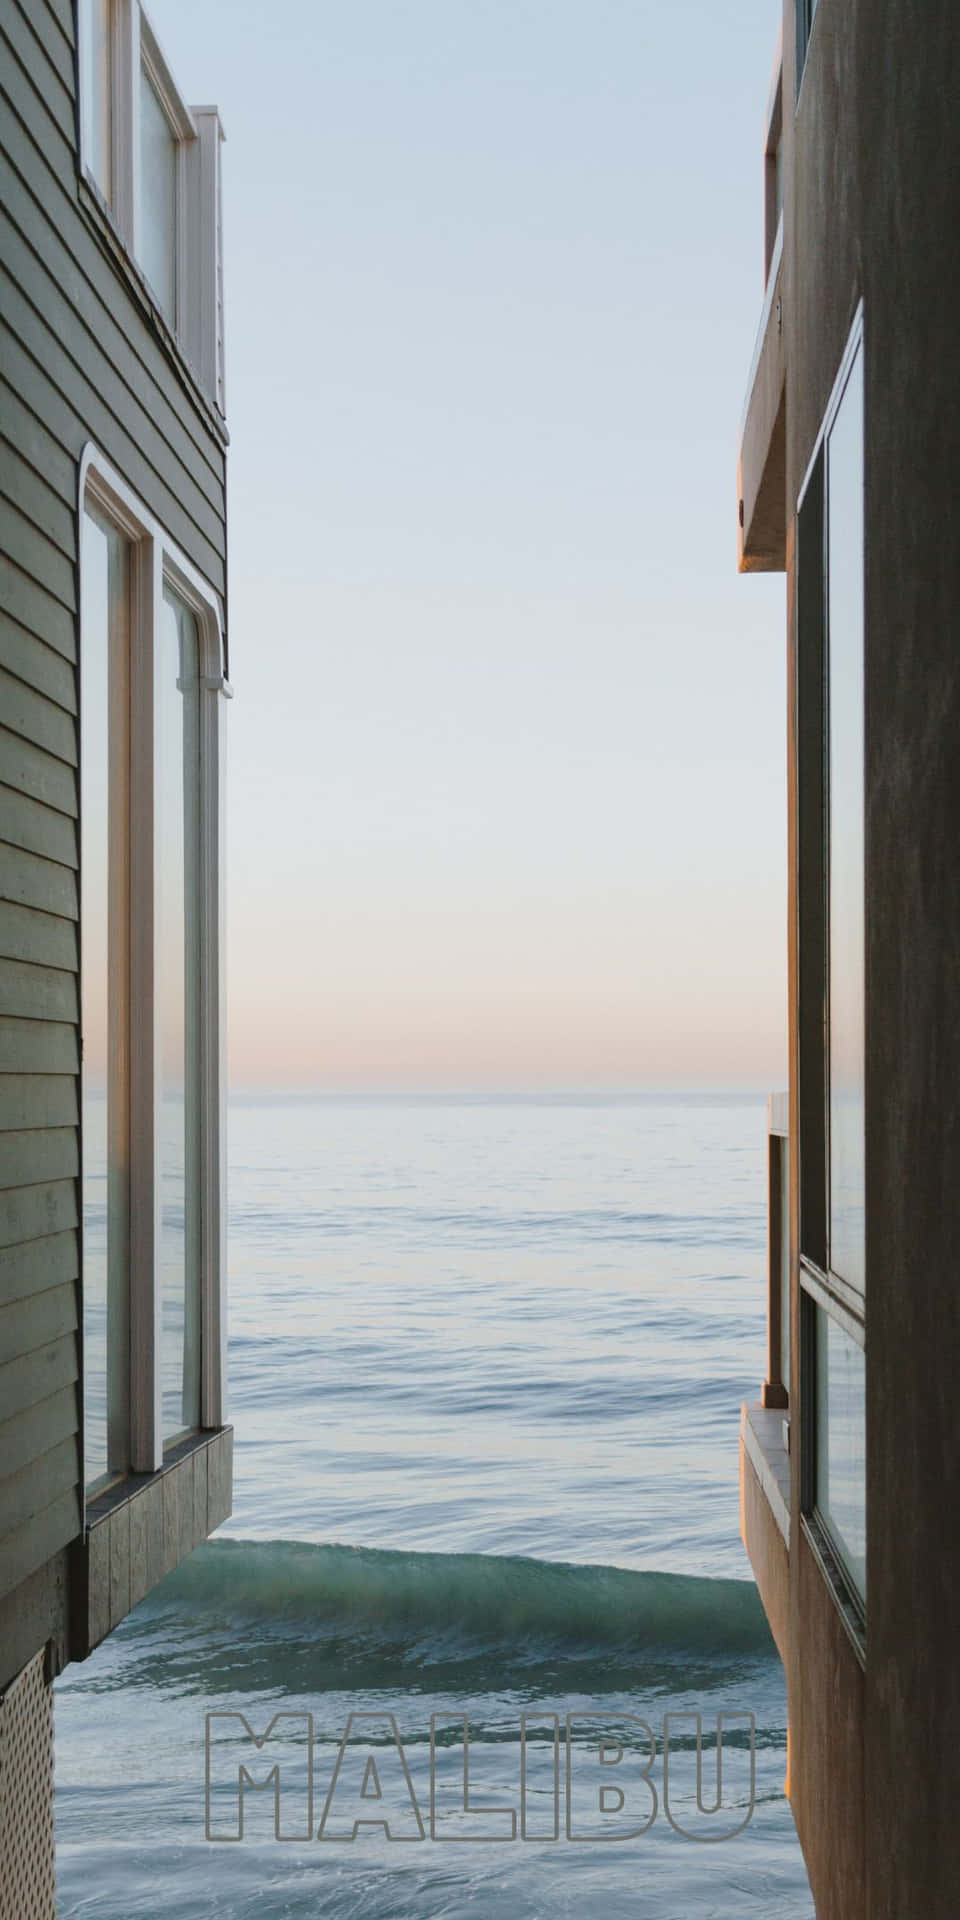 Strandzwischen Häusern Pixel 3 Hintergrund In Malibu